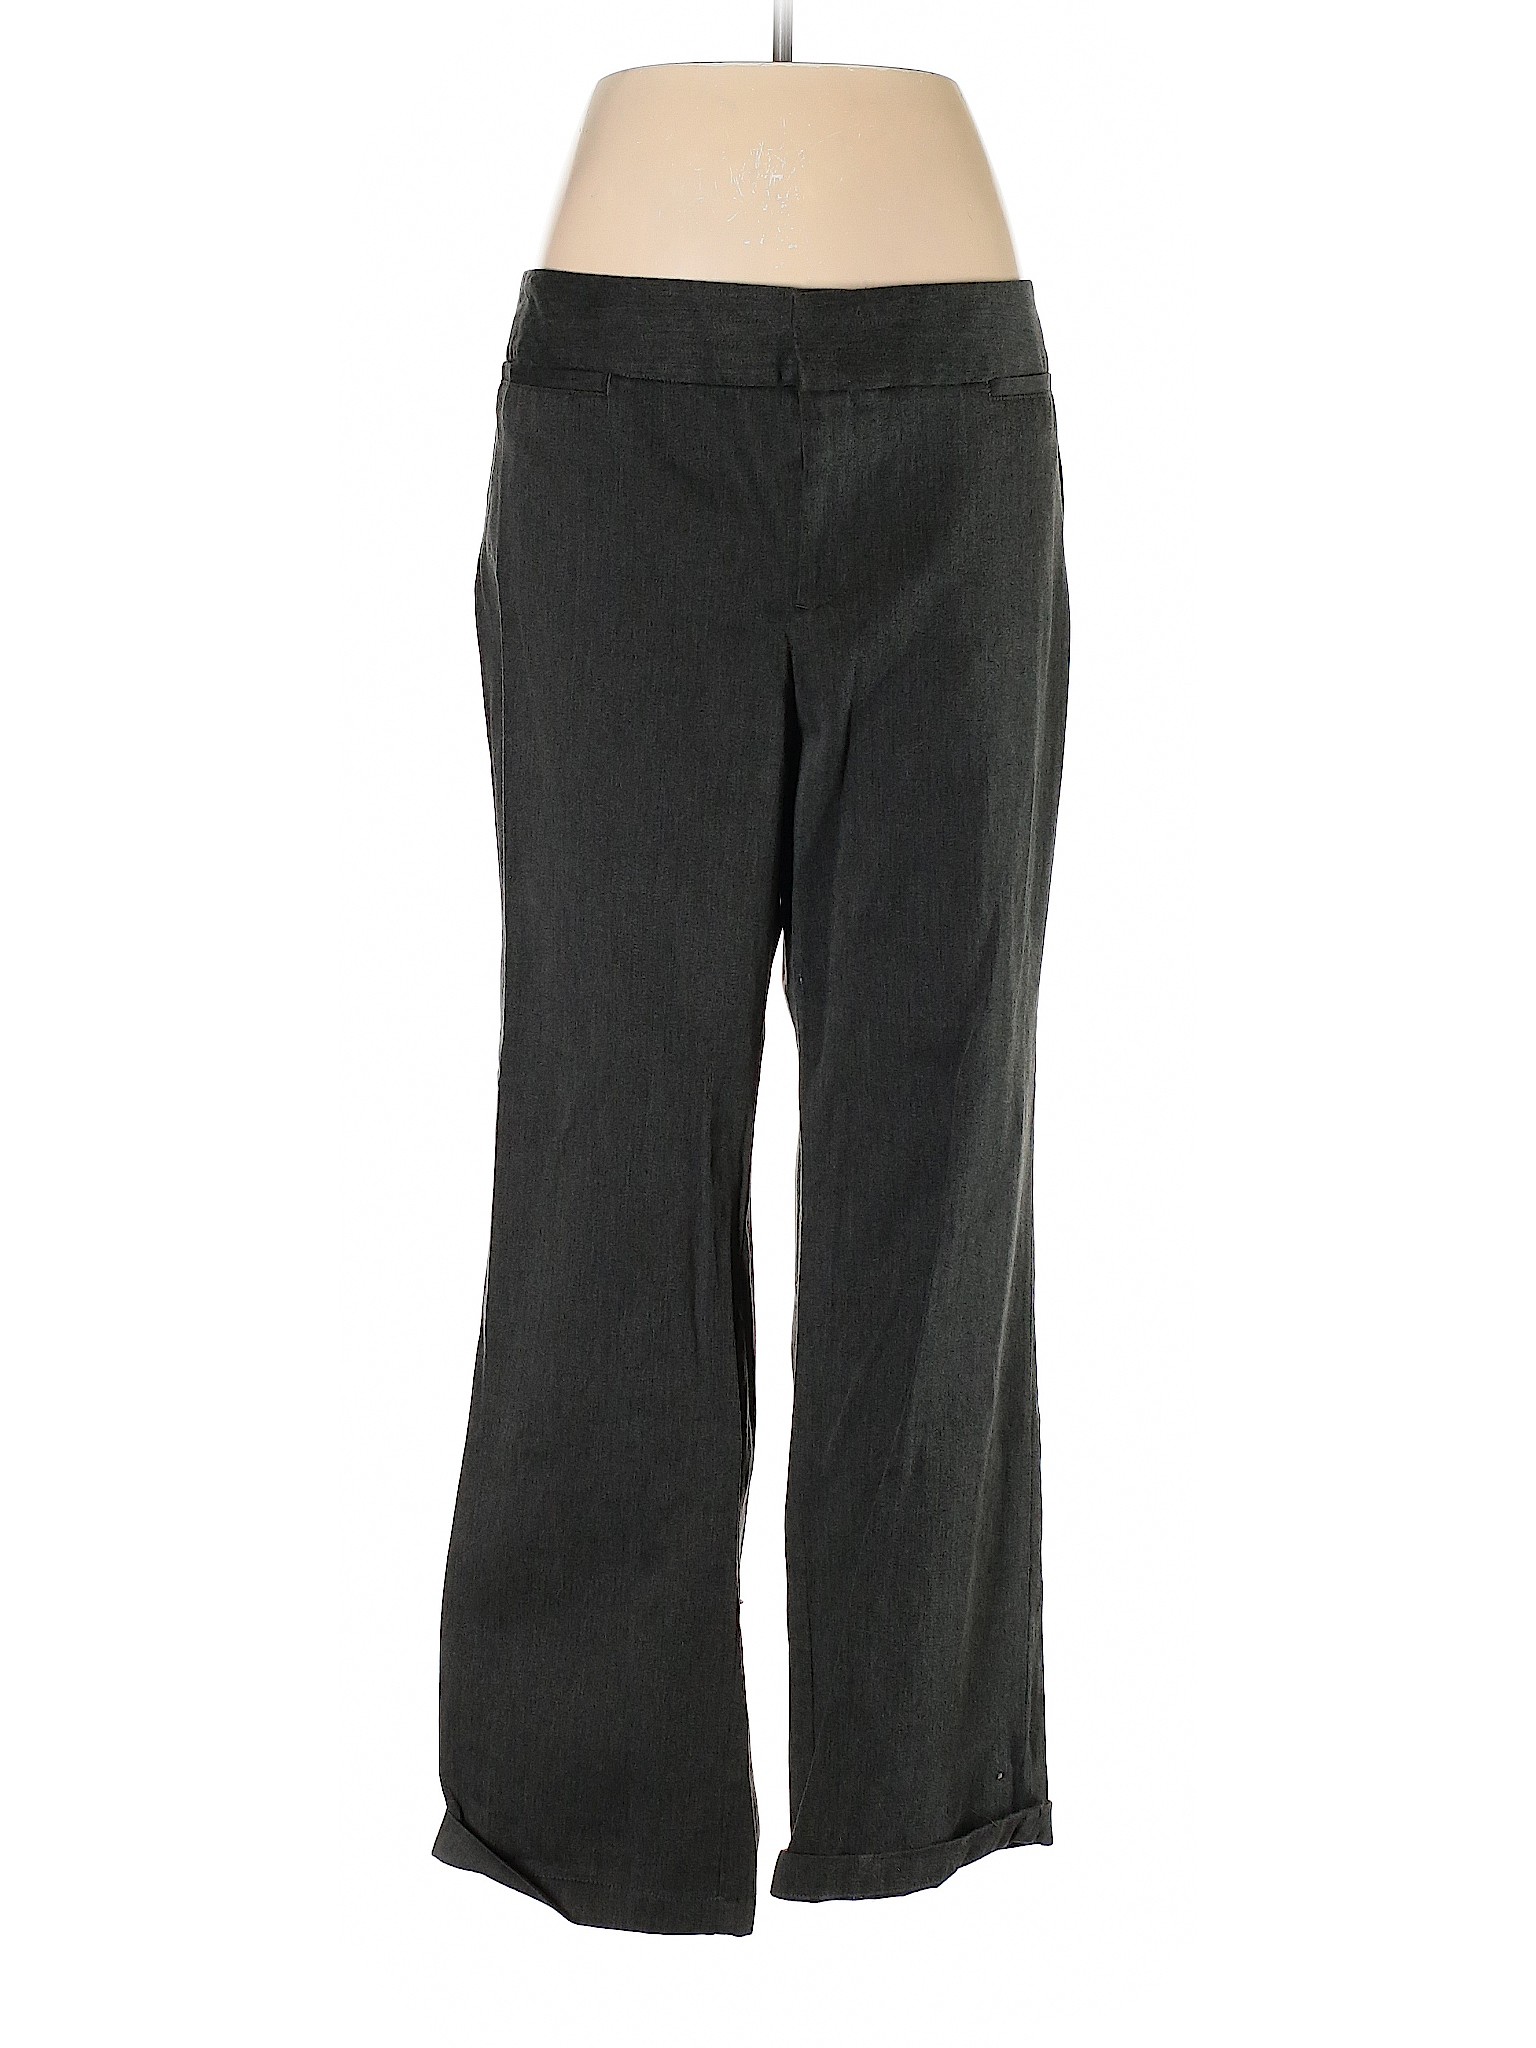 Dockers Women Black Dress Pants 14 | eBay